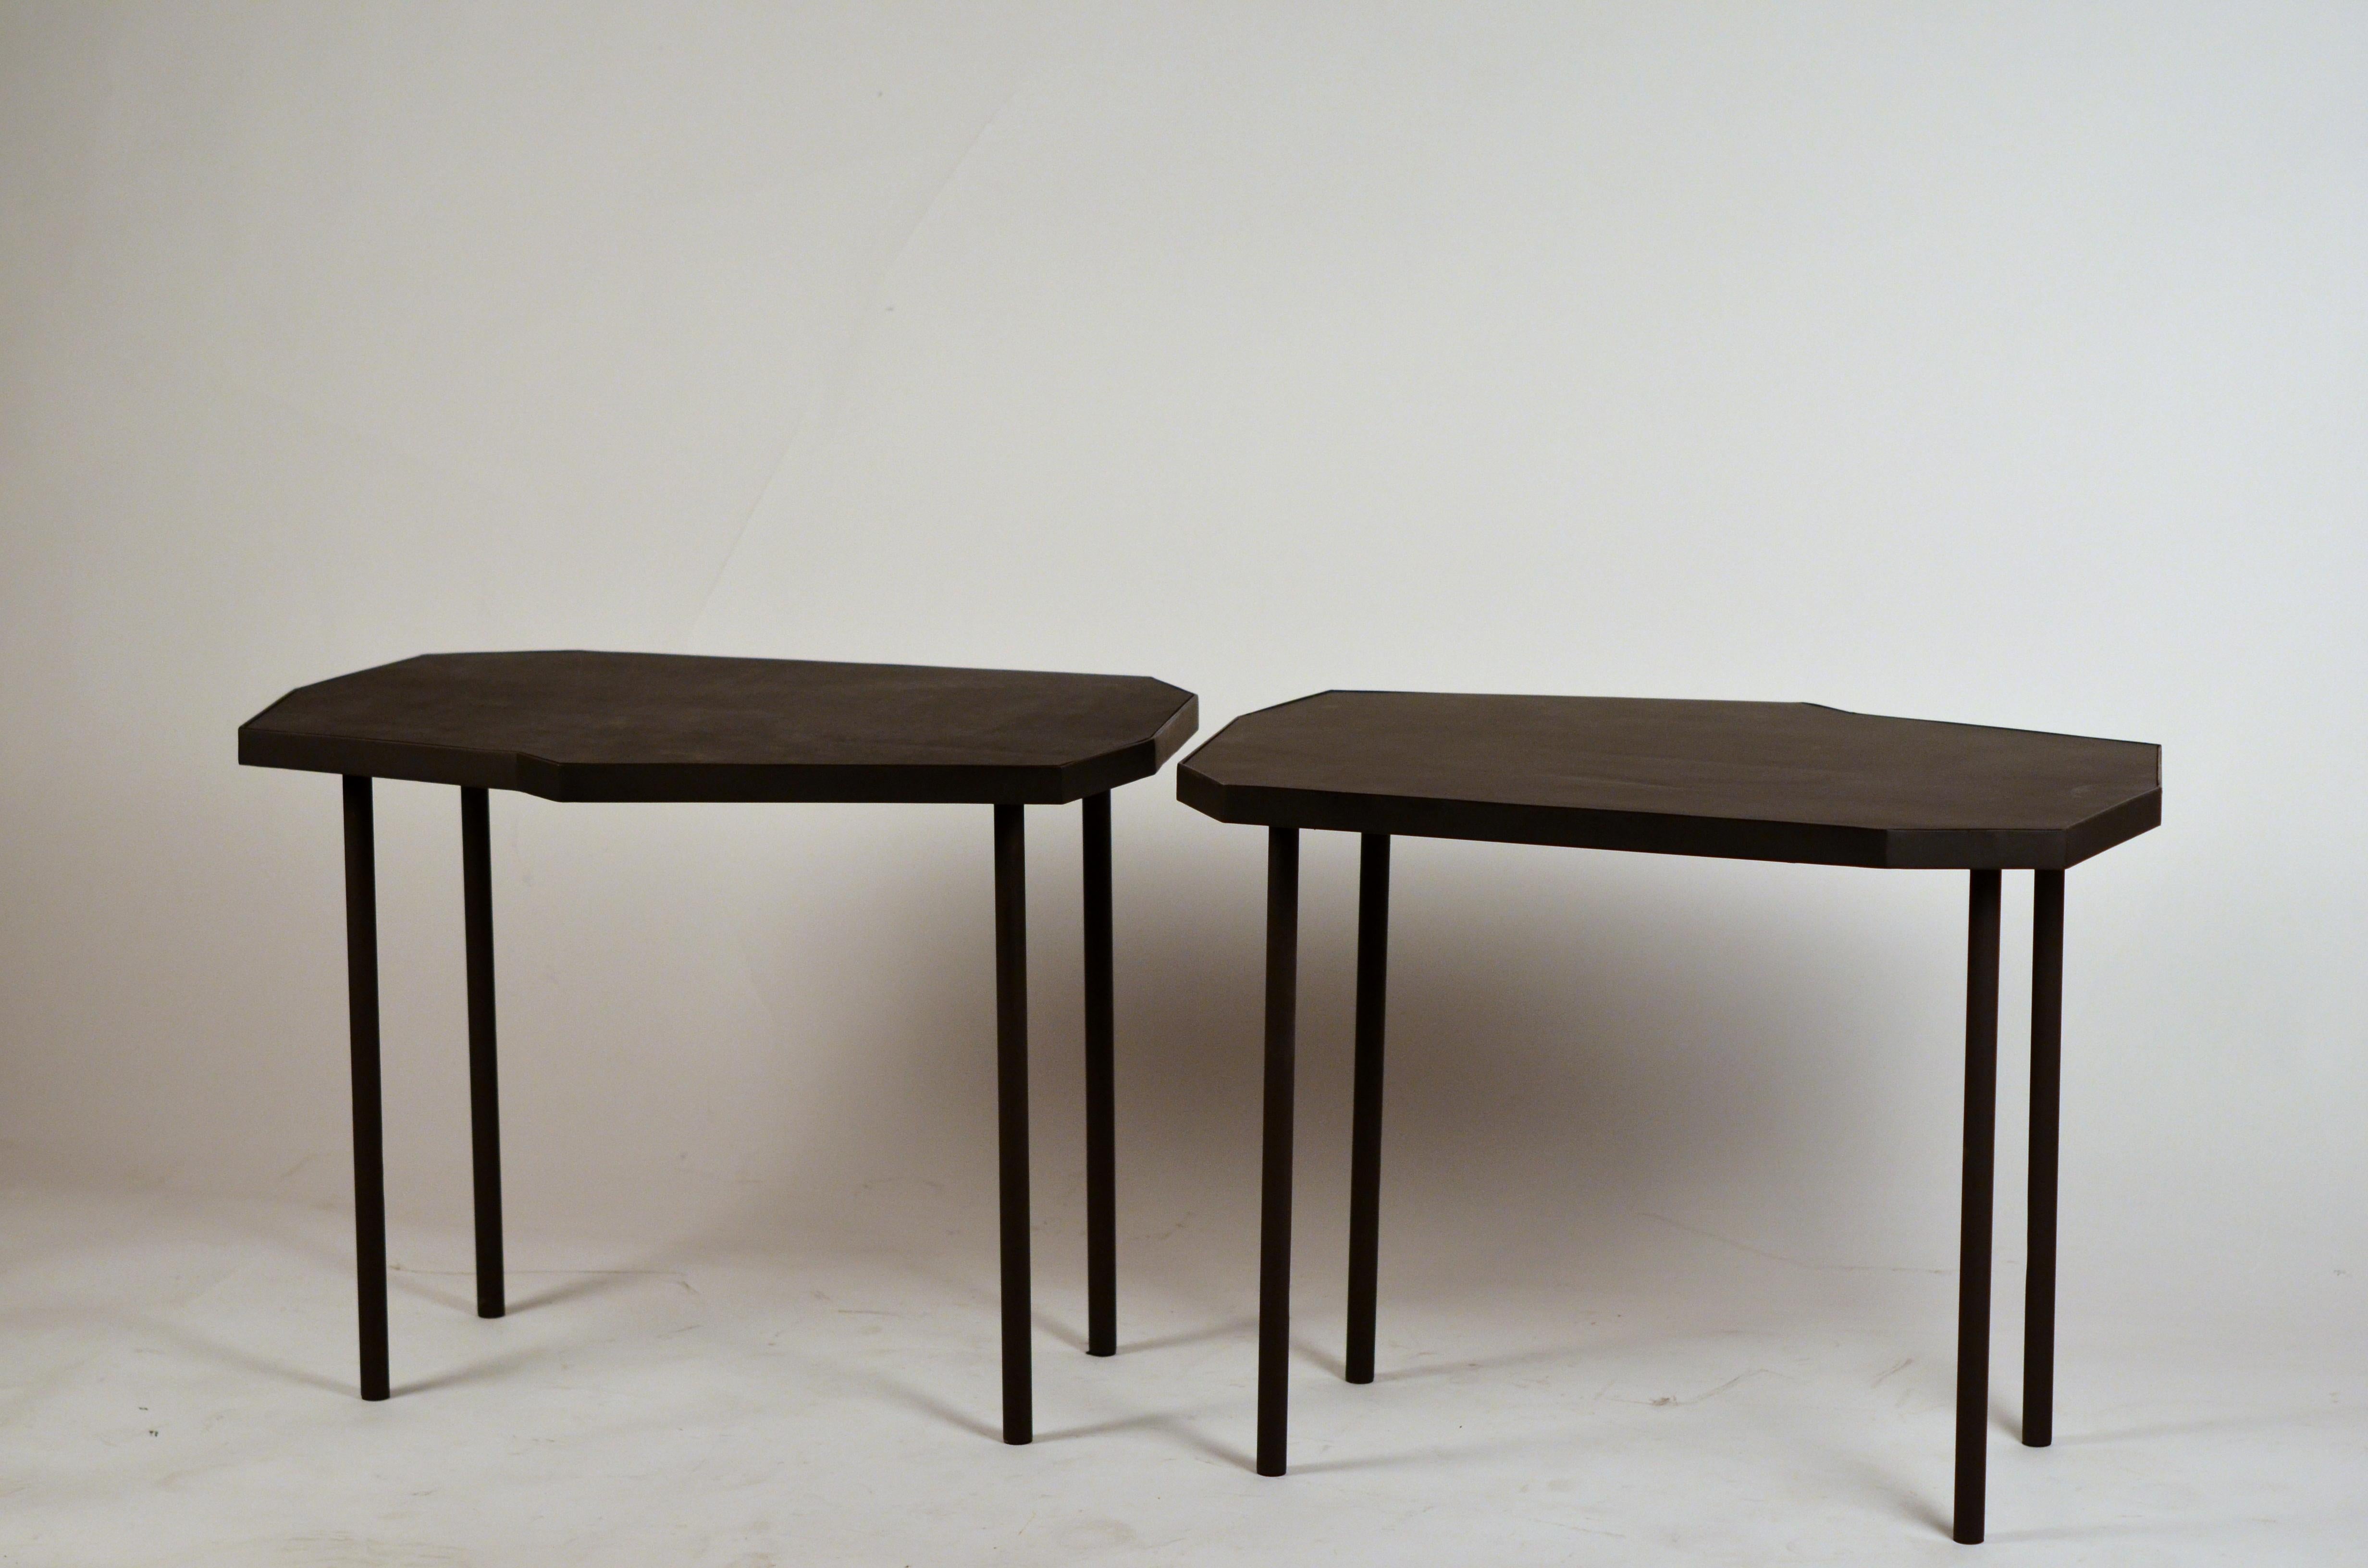 Paire de tables d'appoint asymétriques en cuir noir 'Décagone' de Design Frères.

Idéal à côté d'une paire de fauteuils.